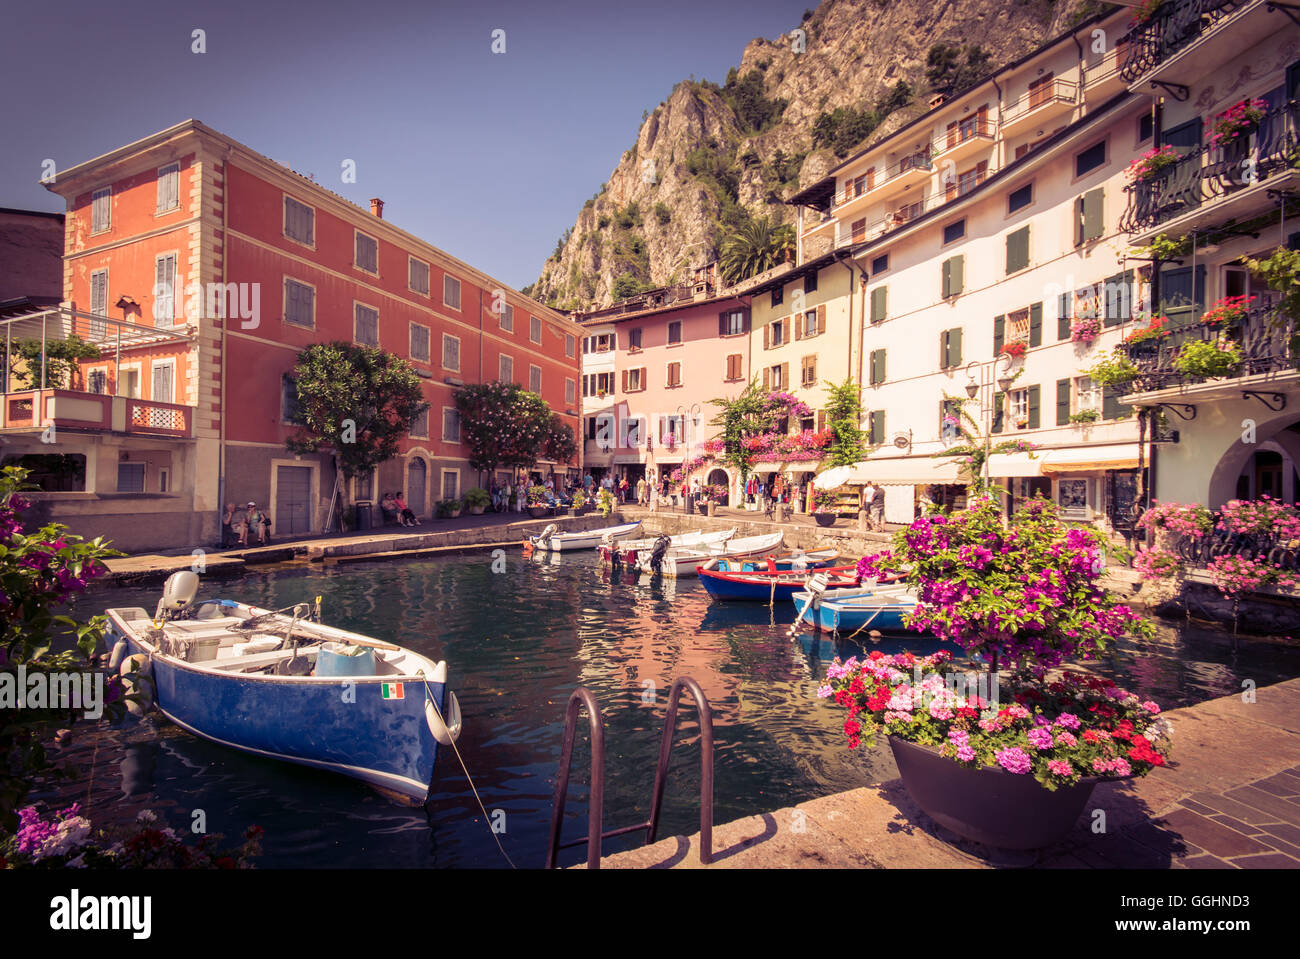 Limone sul Garda è una città in Lombardia (Italia settentrionale), sulla riva del lago di Garda. Foto Stock